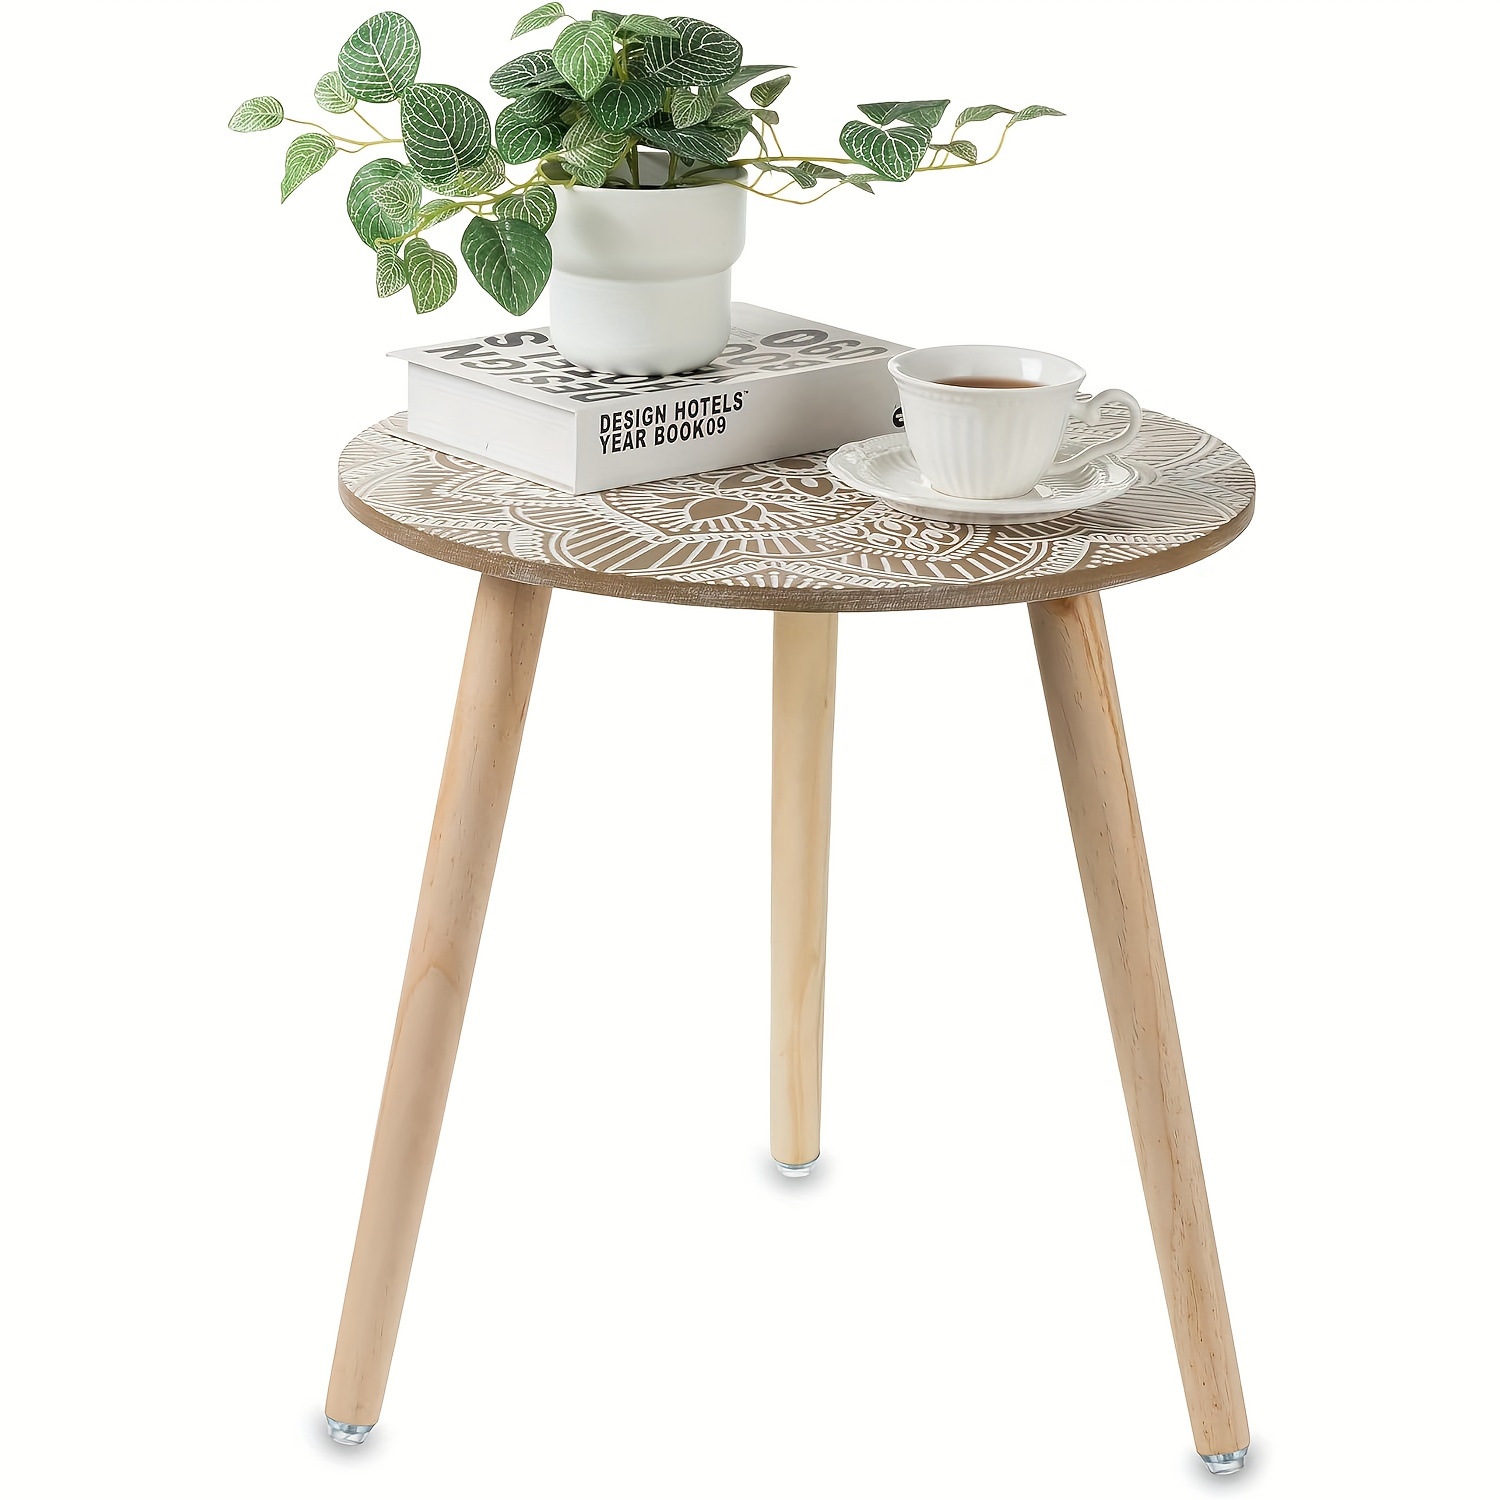 Table pliante en bois moderne nordique, meubles de cuisine